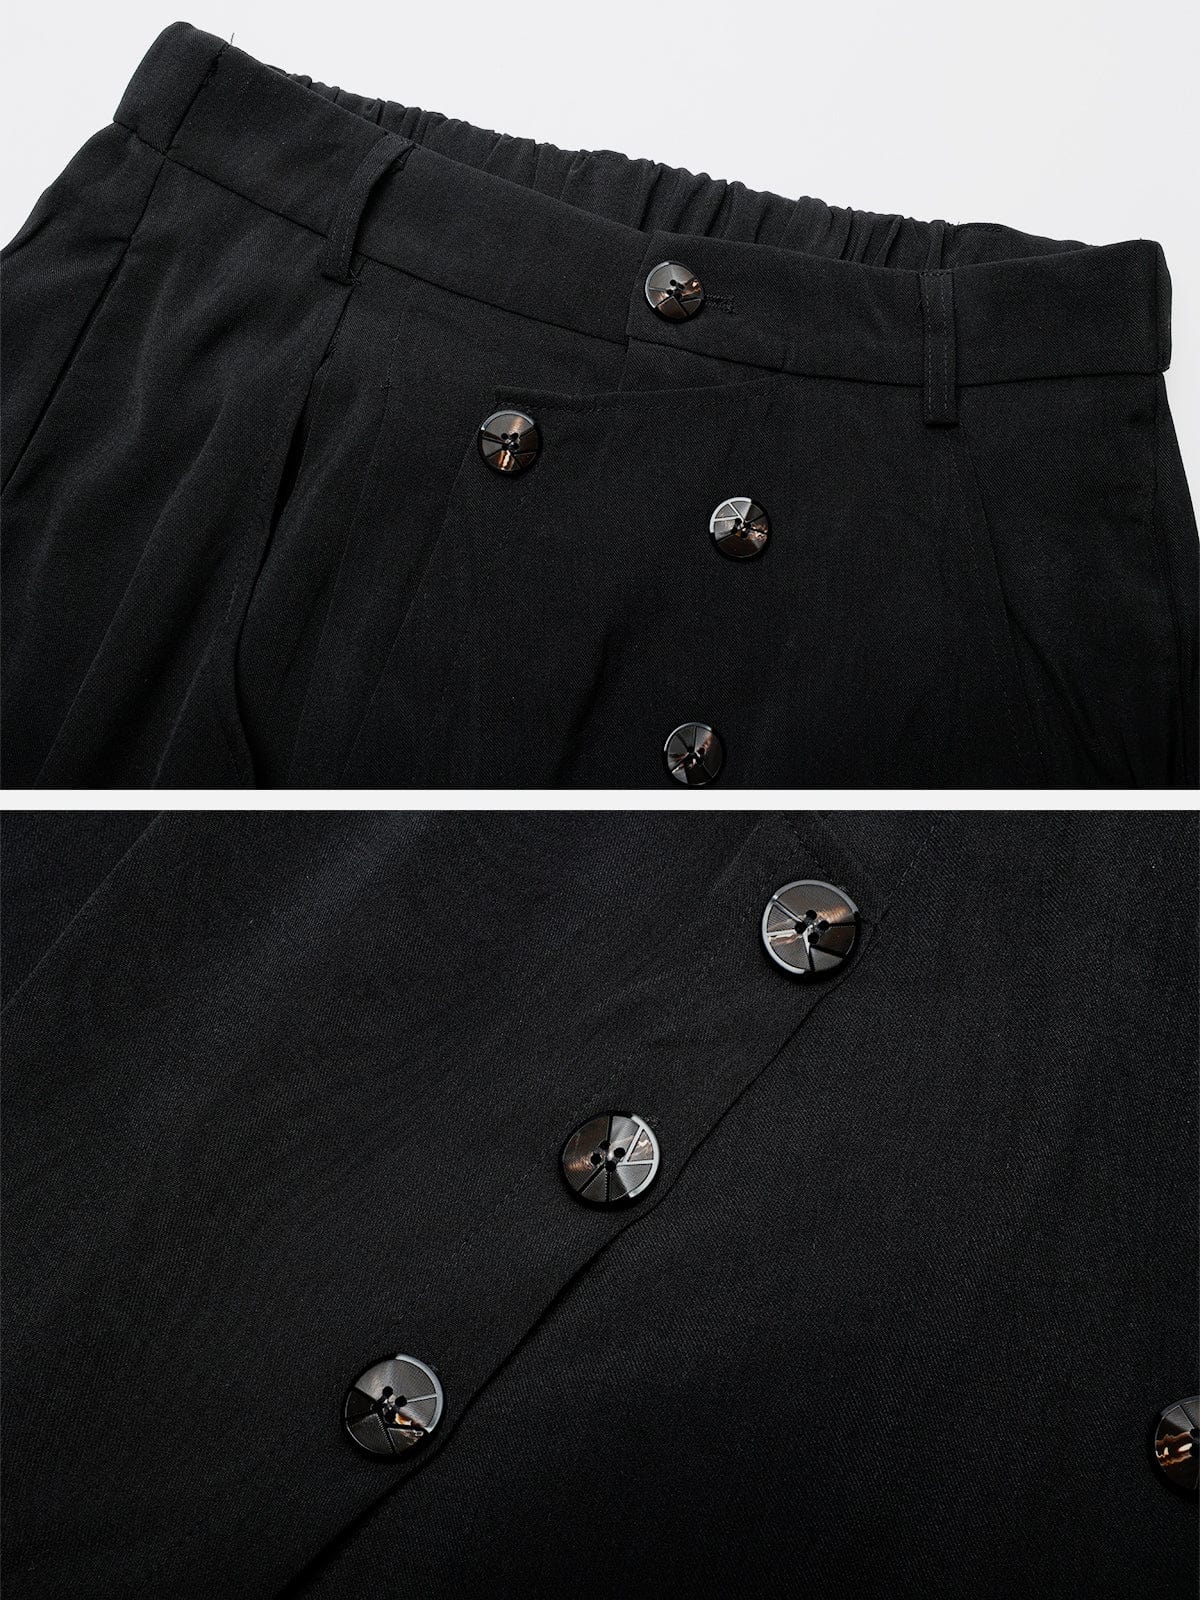 NEV Solid Color Irregular Design Skirt Pants